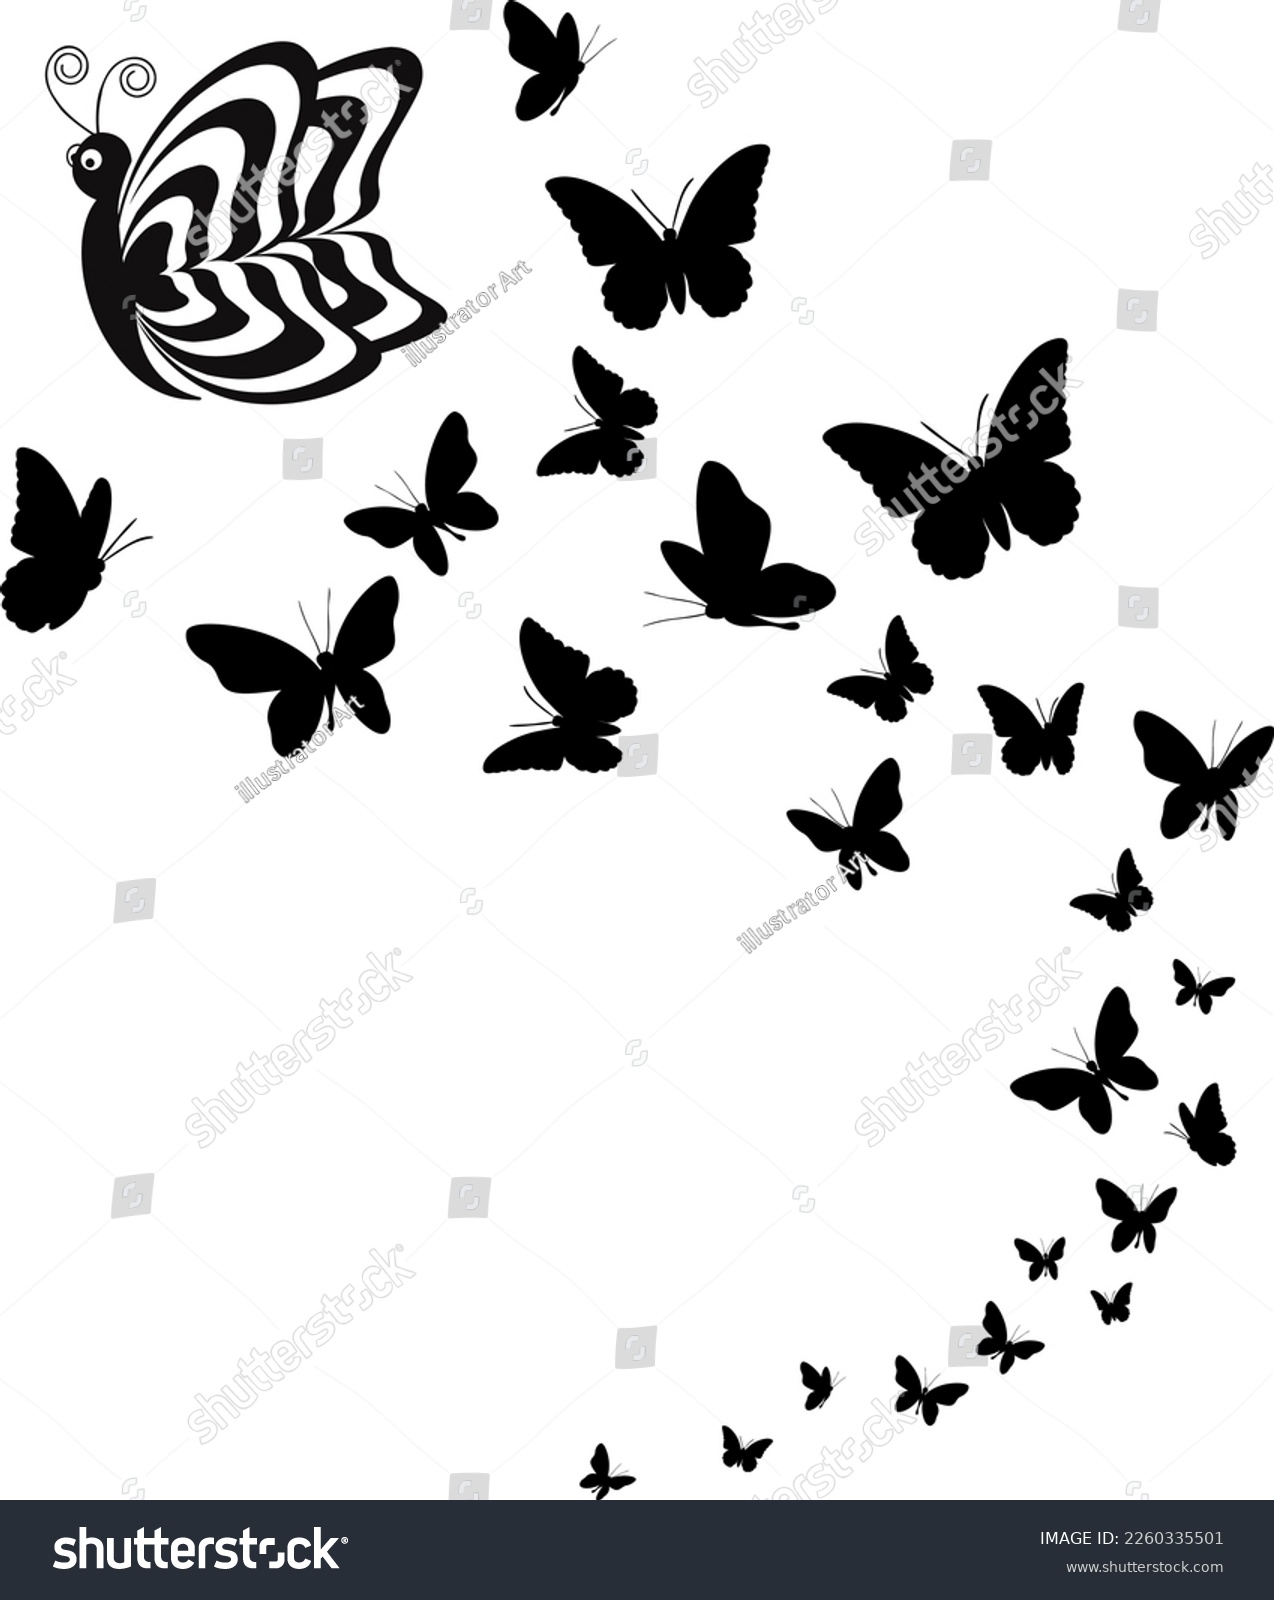 SVG of Black Butterfly svg, Butterfly vector illustration, butterfly logo svg